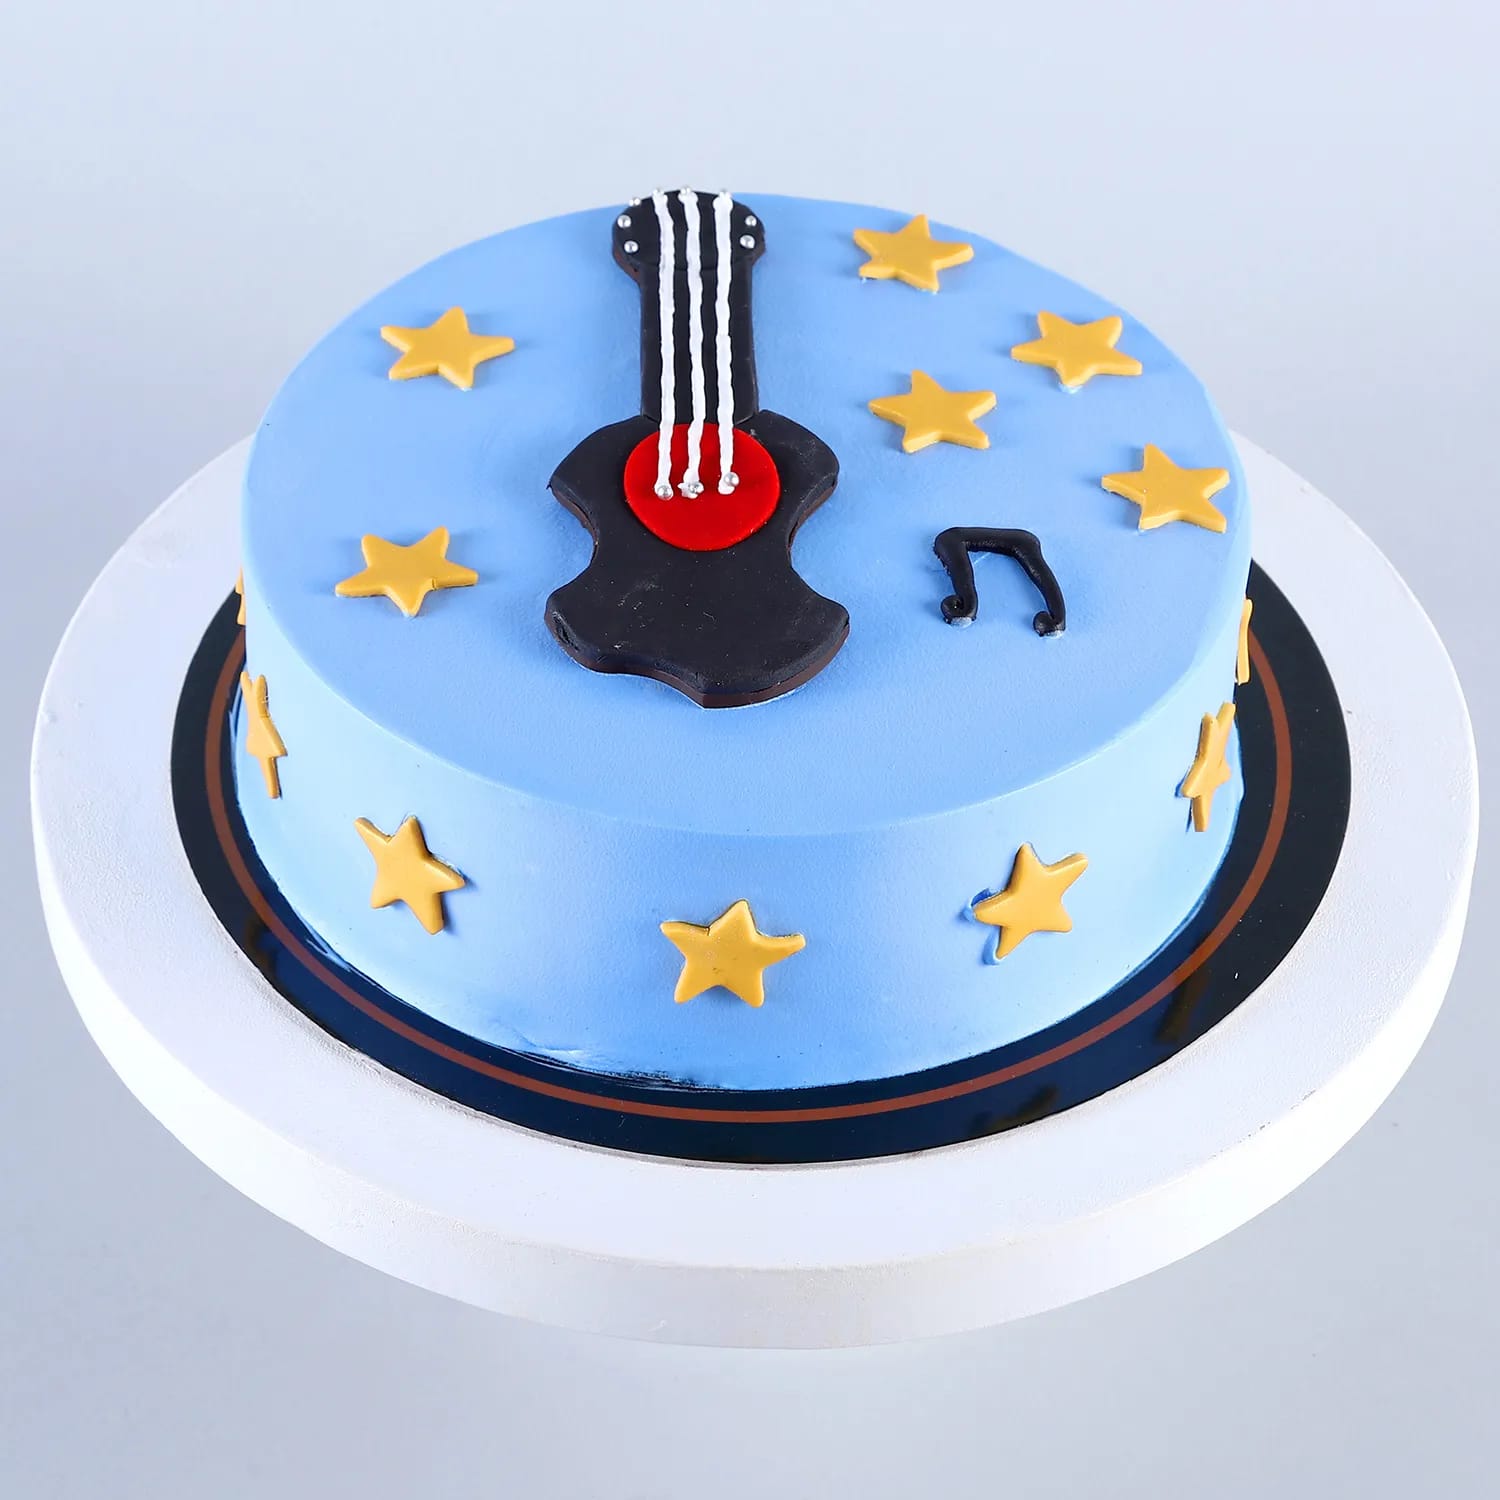 Guitar Theme Two Tier Birthday Cake For Boys 169 - Cake Square Chennai |  Cake Shop in Chennai